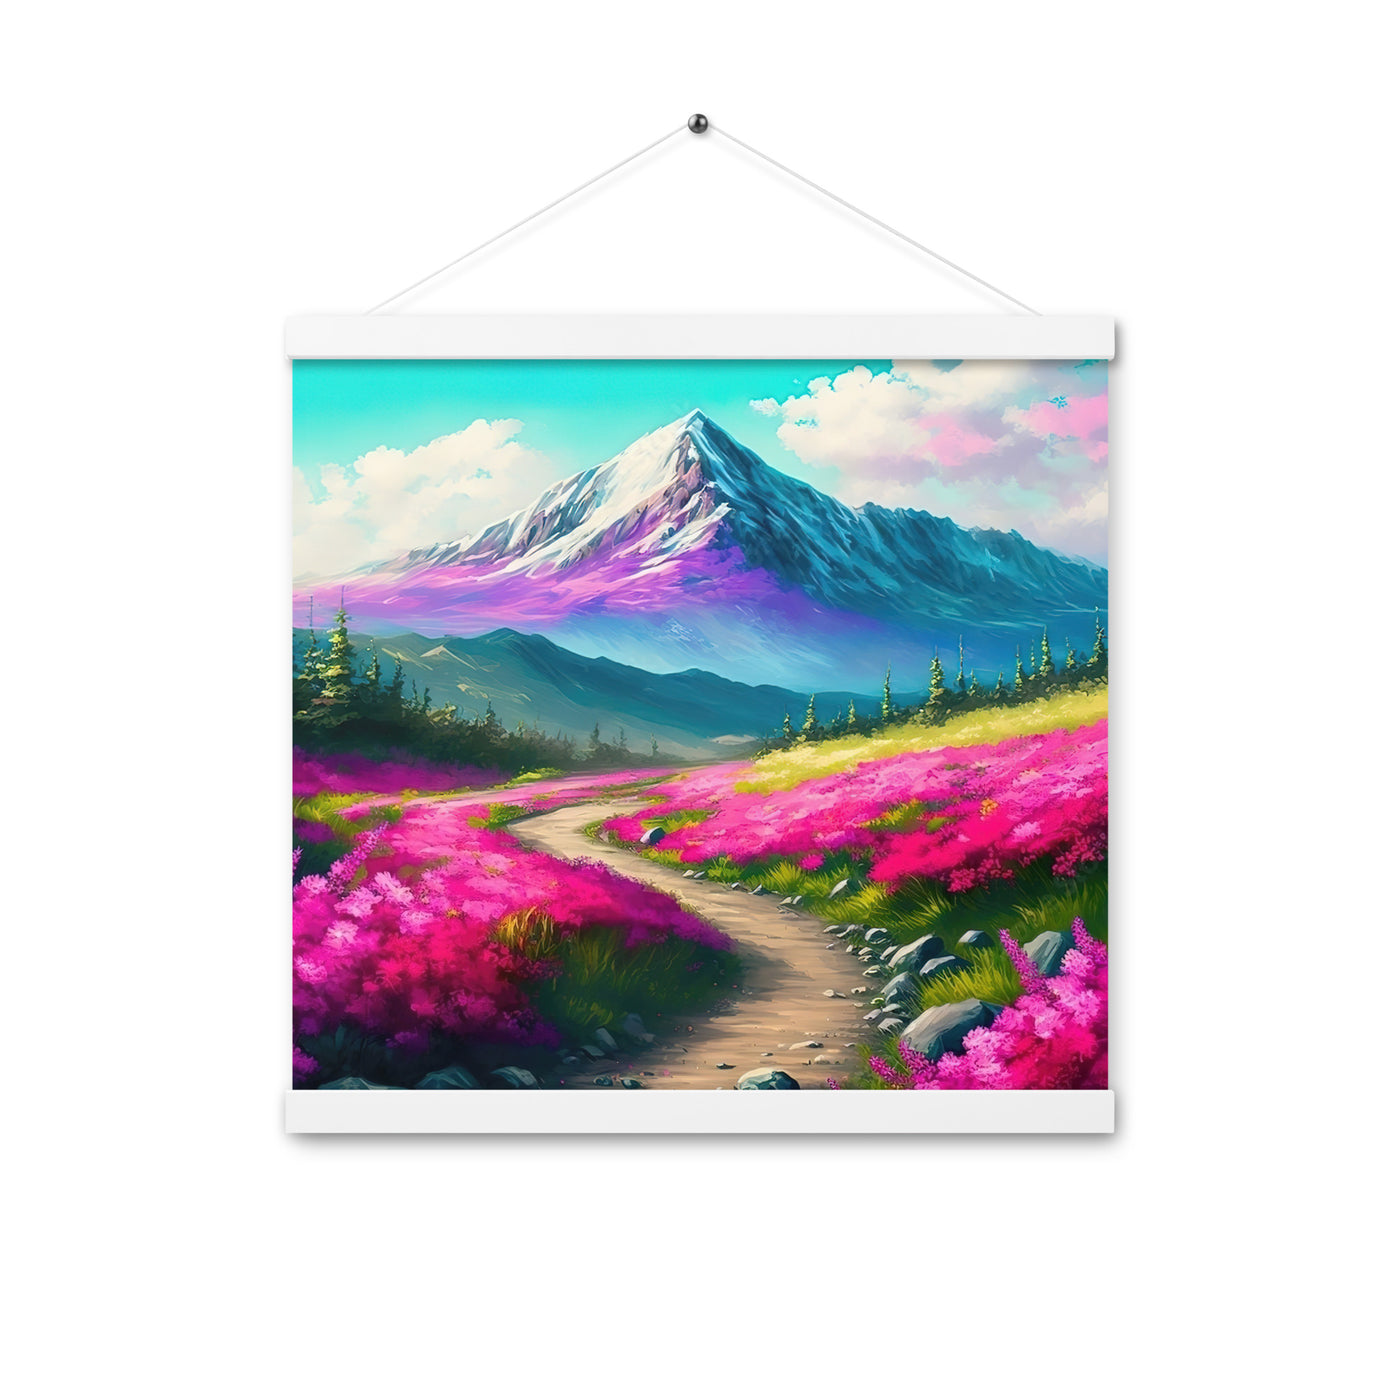 Berg, pinke Blumen und Wanderweg - Landschaftsmalerei - Premium Poster mit Aufhängung berge xxx 40.6 x 40.6 cm